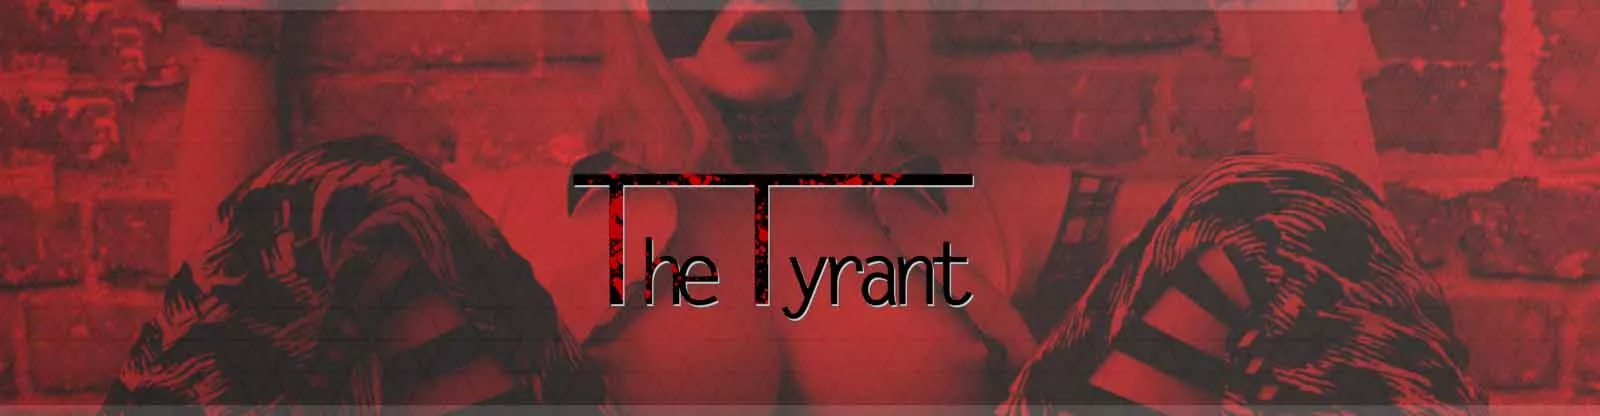 Permainan seks Tyrant 3d, permainan porno, permainan dewasa